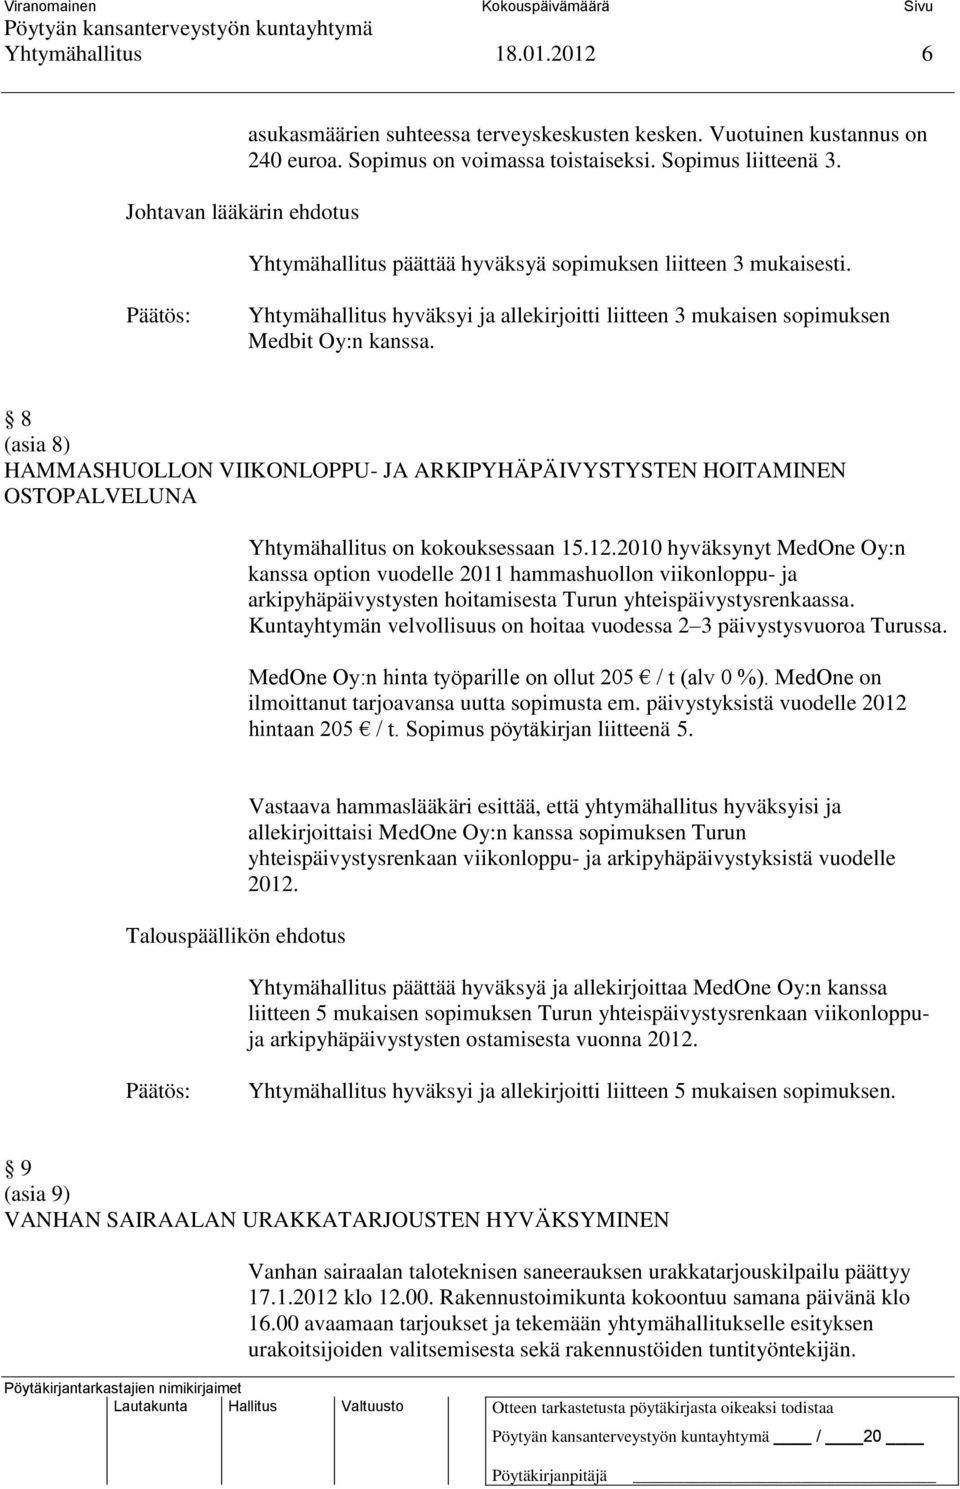 8 (asia 8) HAMMASHUOLLON VIIKONLOPPU- JA ARKIPYHÄPÄIVYSTYSTEN HOITAMINEN OSTOPALVELUNA Yhtymähallitus on kokouksessaan 15.12.